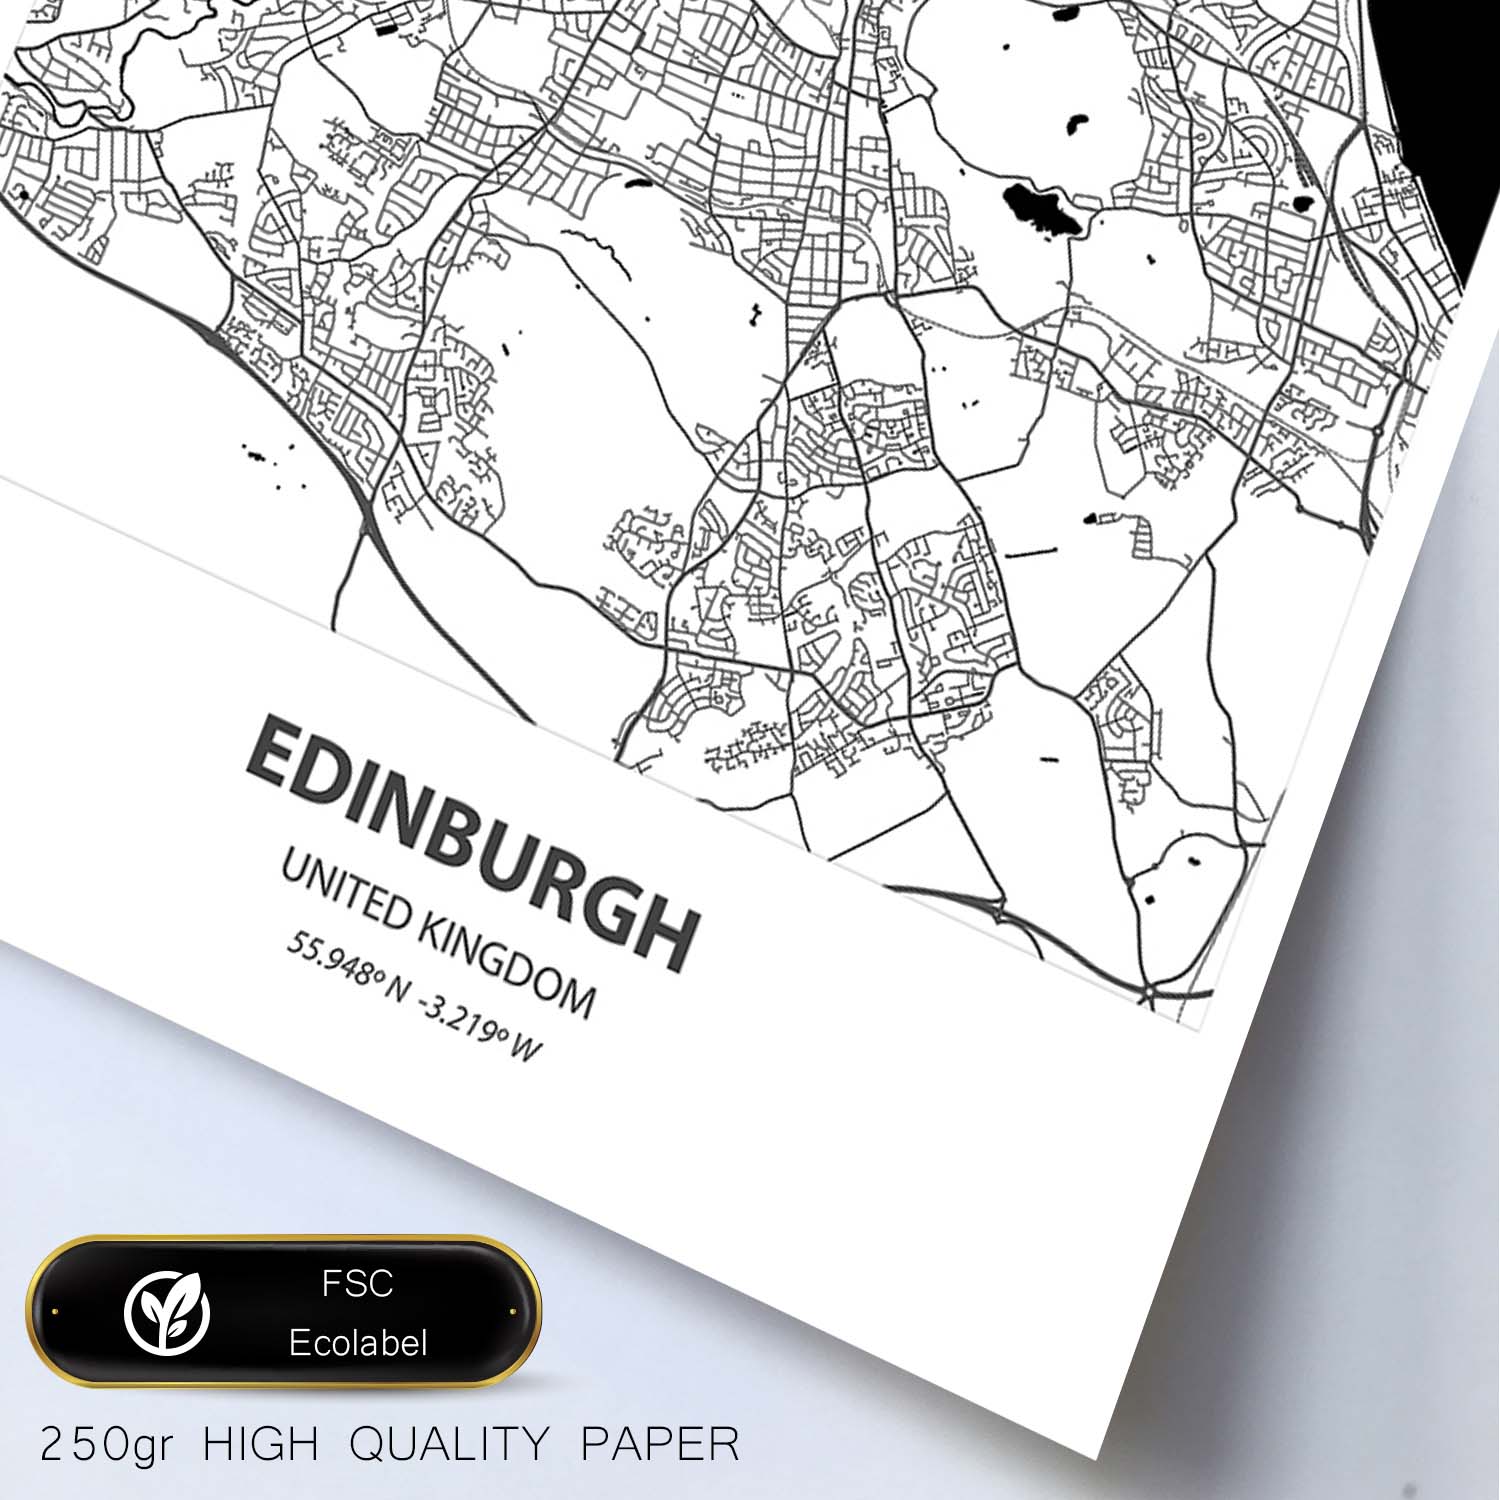 Poster con mapa de Edinburgh - Reino Unido. Láminas de ciudades de Reino Unido con mares y ríos en color negro.-Artwork-Nacnic-Nacnic Estudio SL